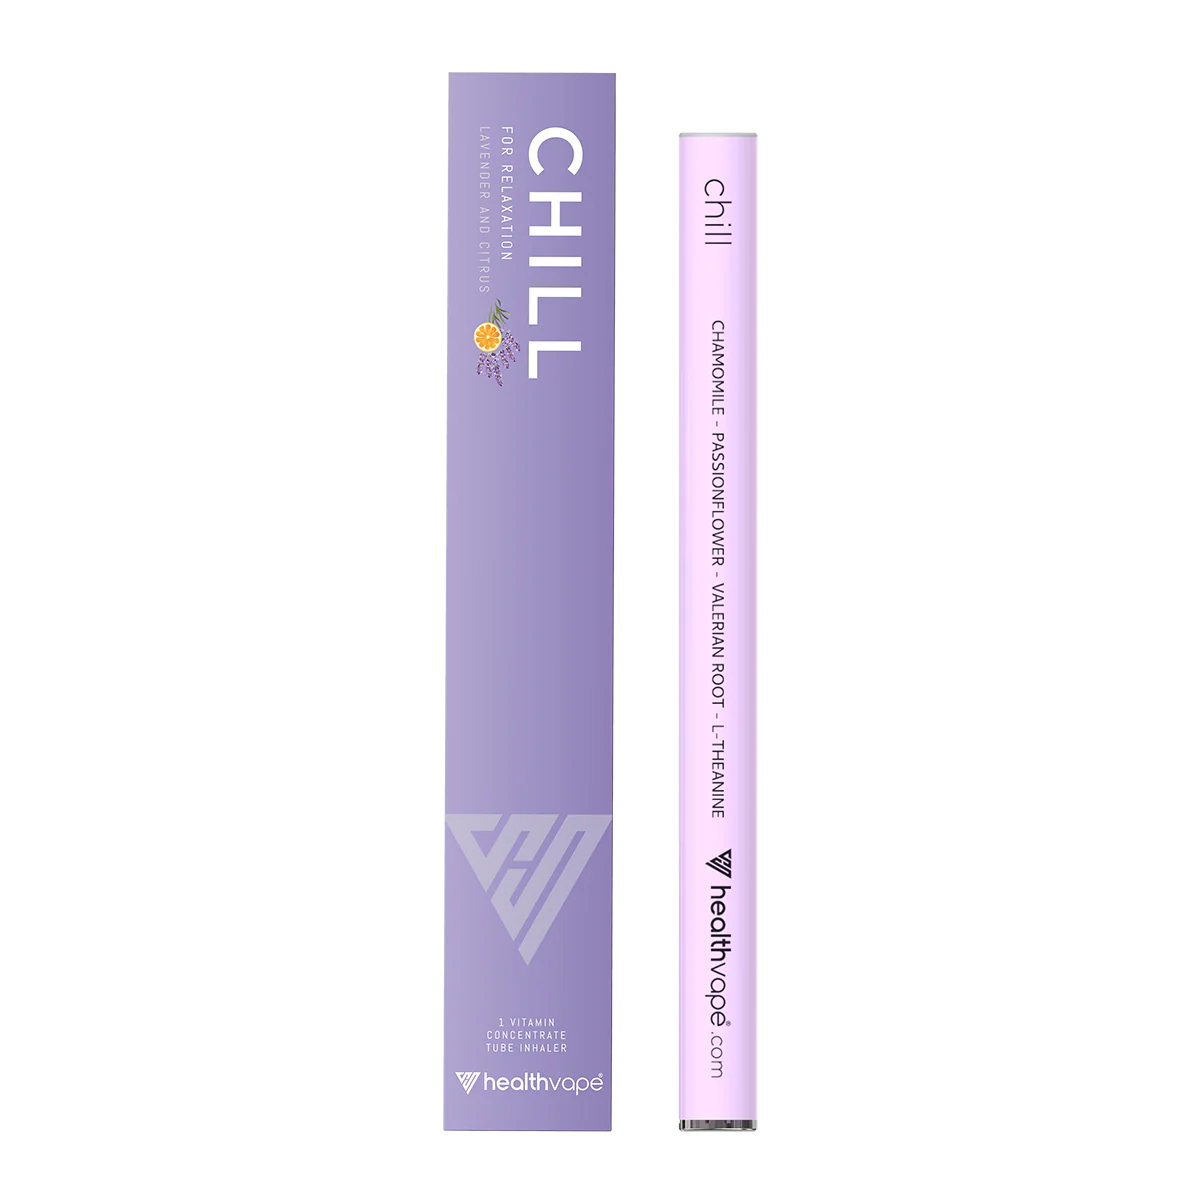 CHILL – Chamomile GRAND SALE 50% OFF) :]